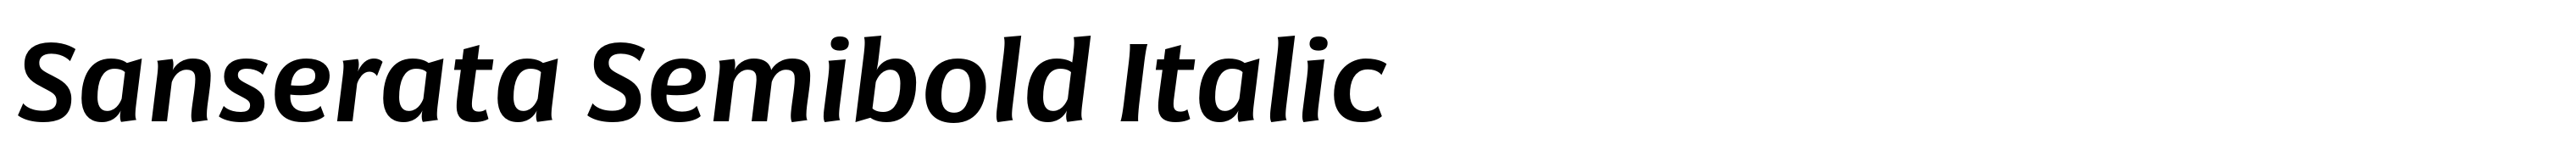 Sanserata Semibold Italic